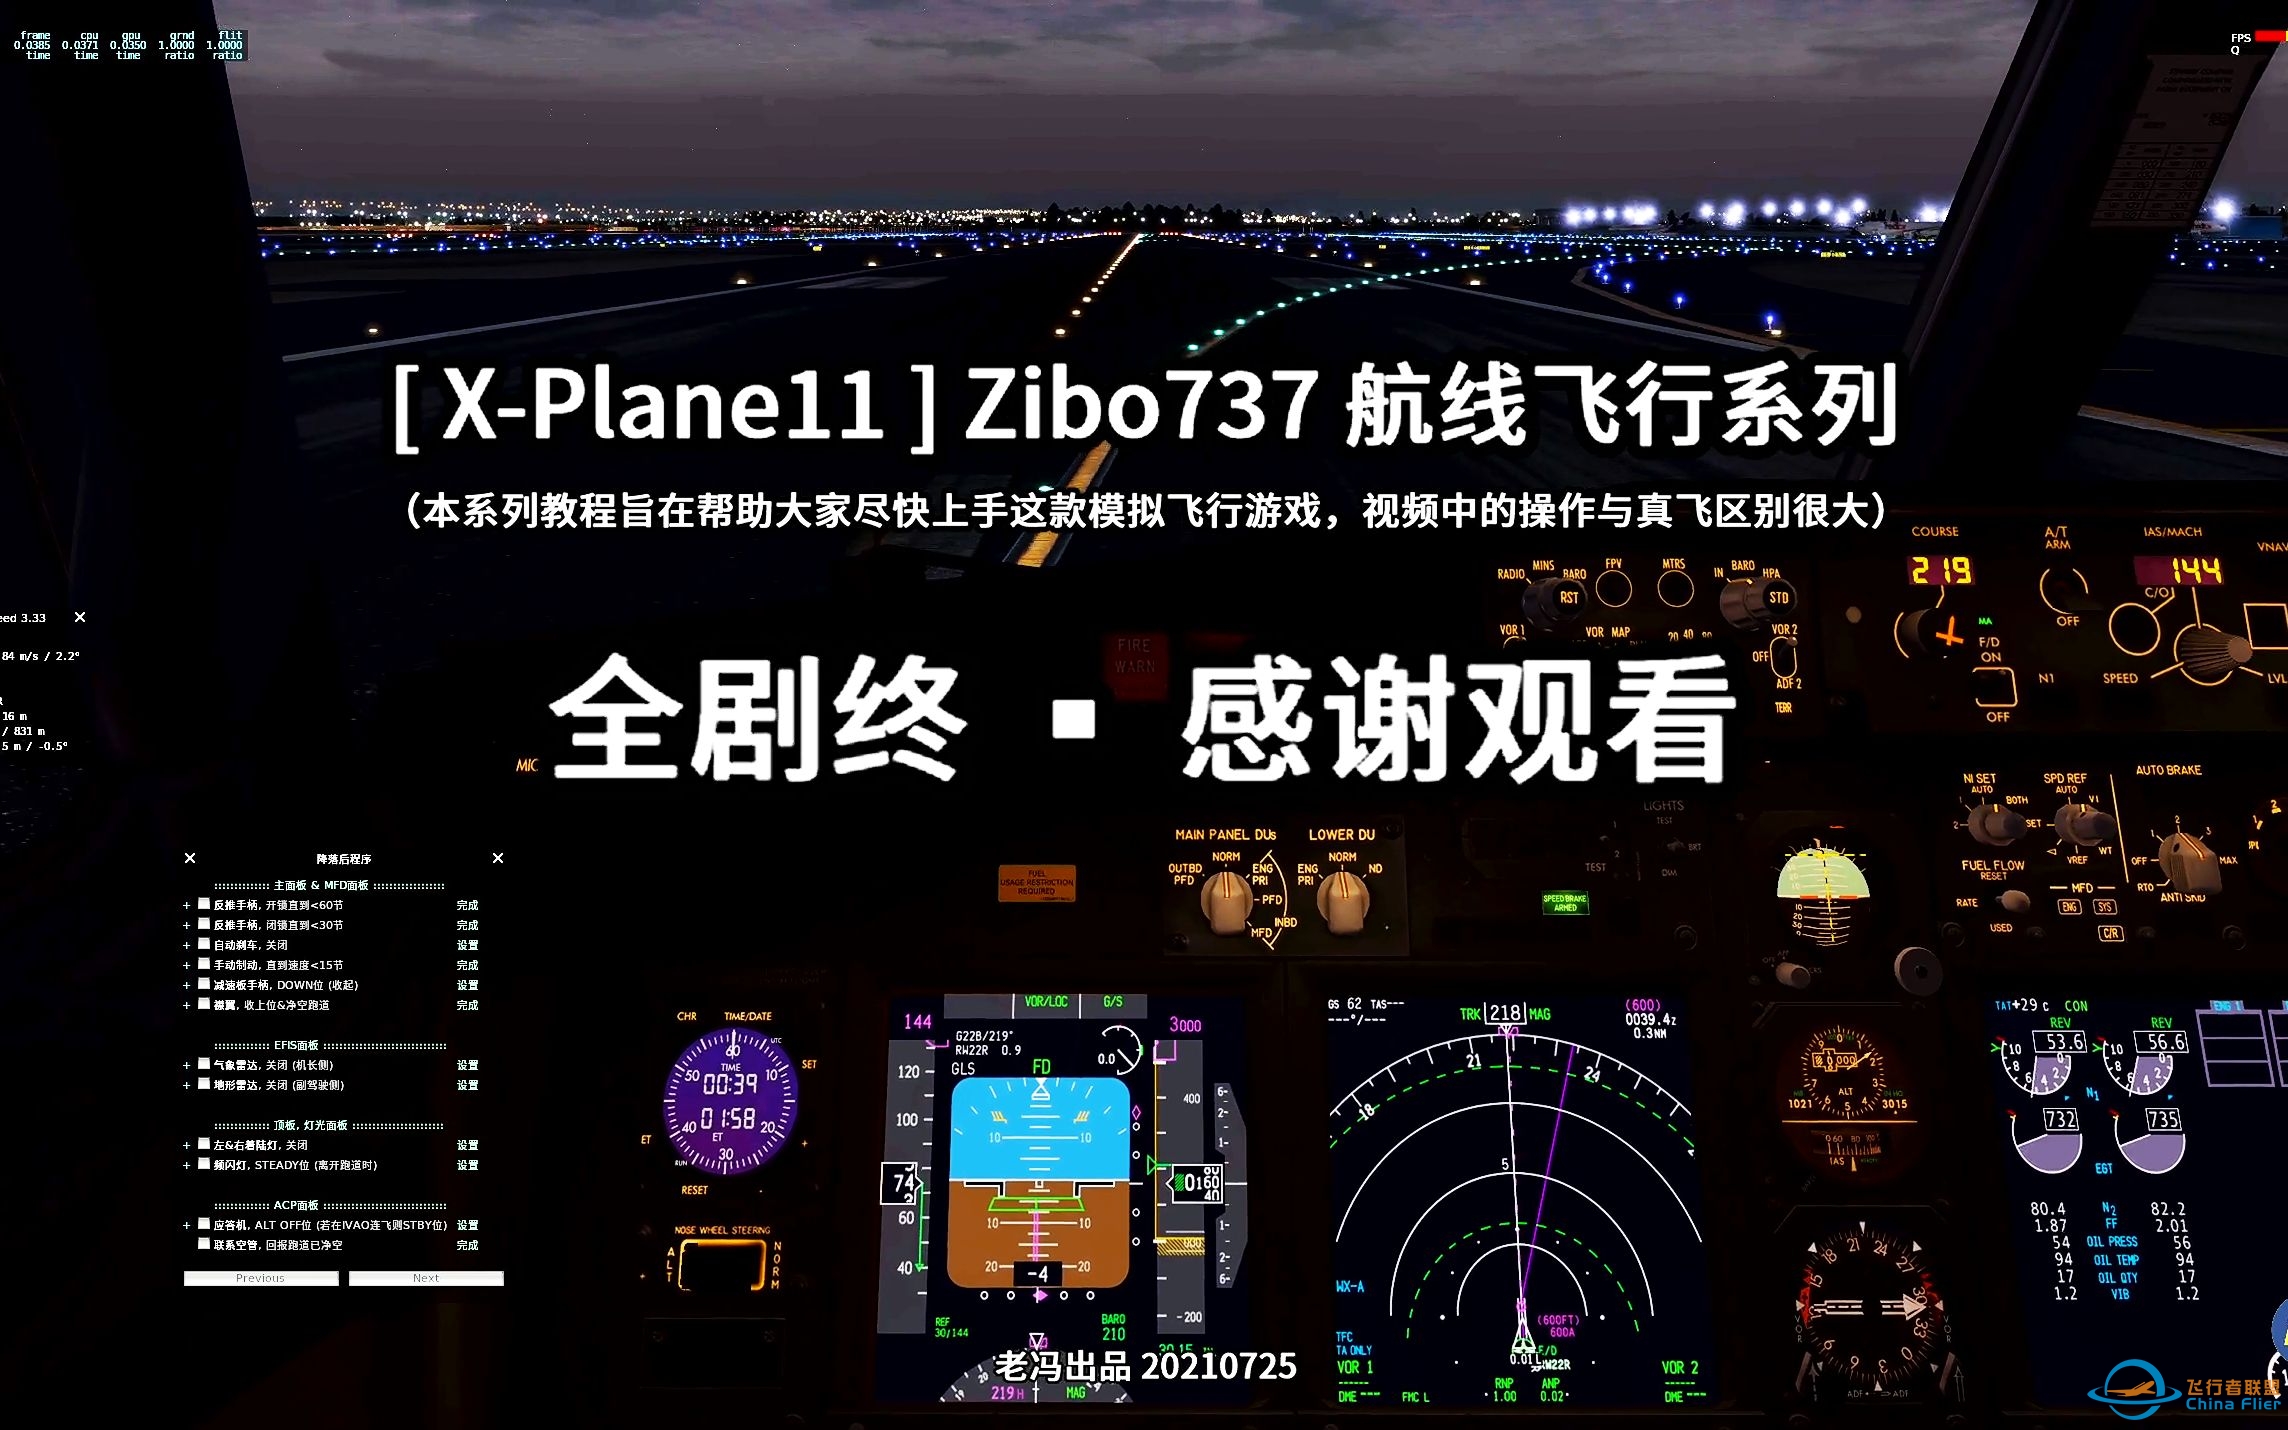 飞行模拟 [ X-Plane11 ] Zibo737 航线飞行第9集第7节（一个完整的起飞到GLS降落的过程）-2592 